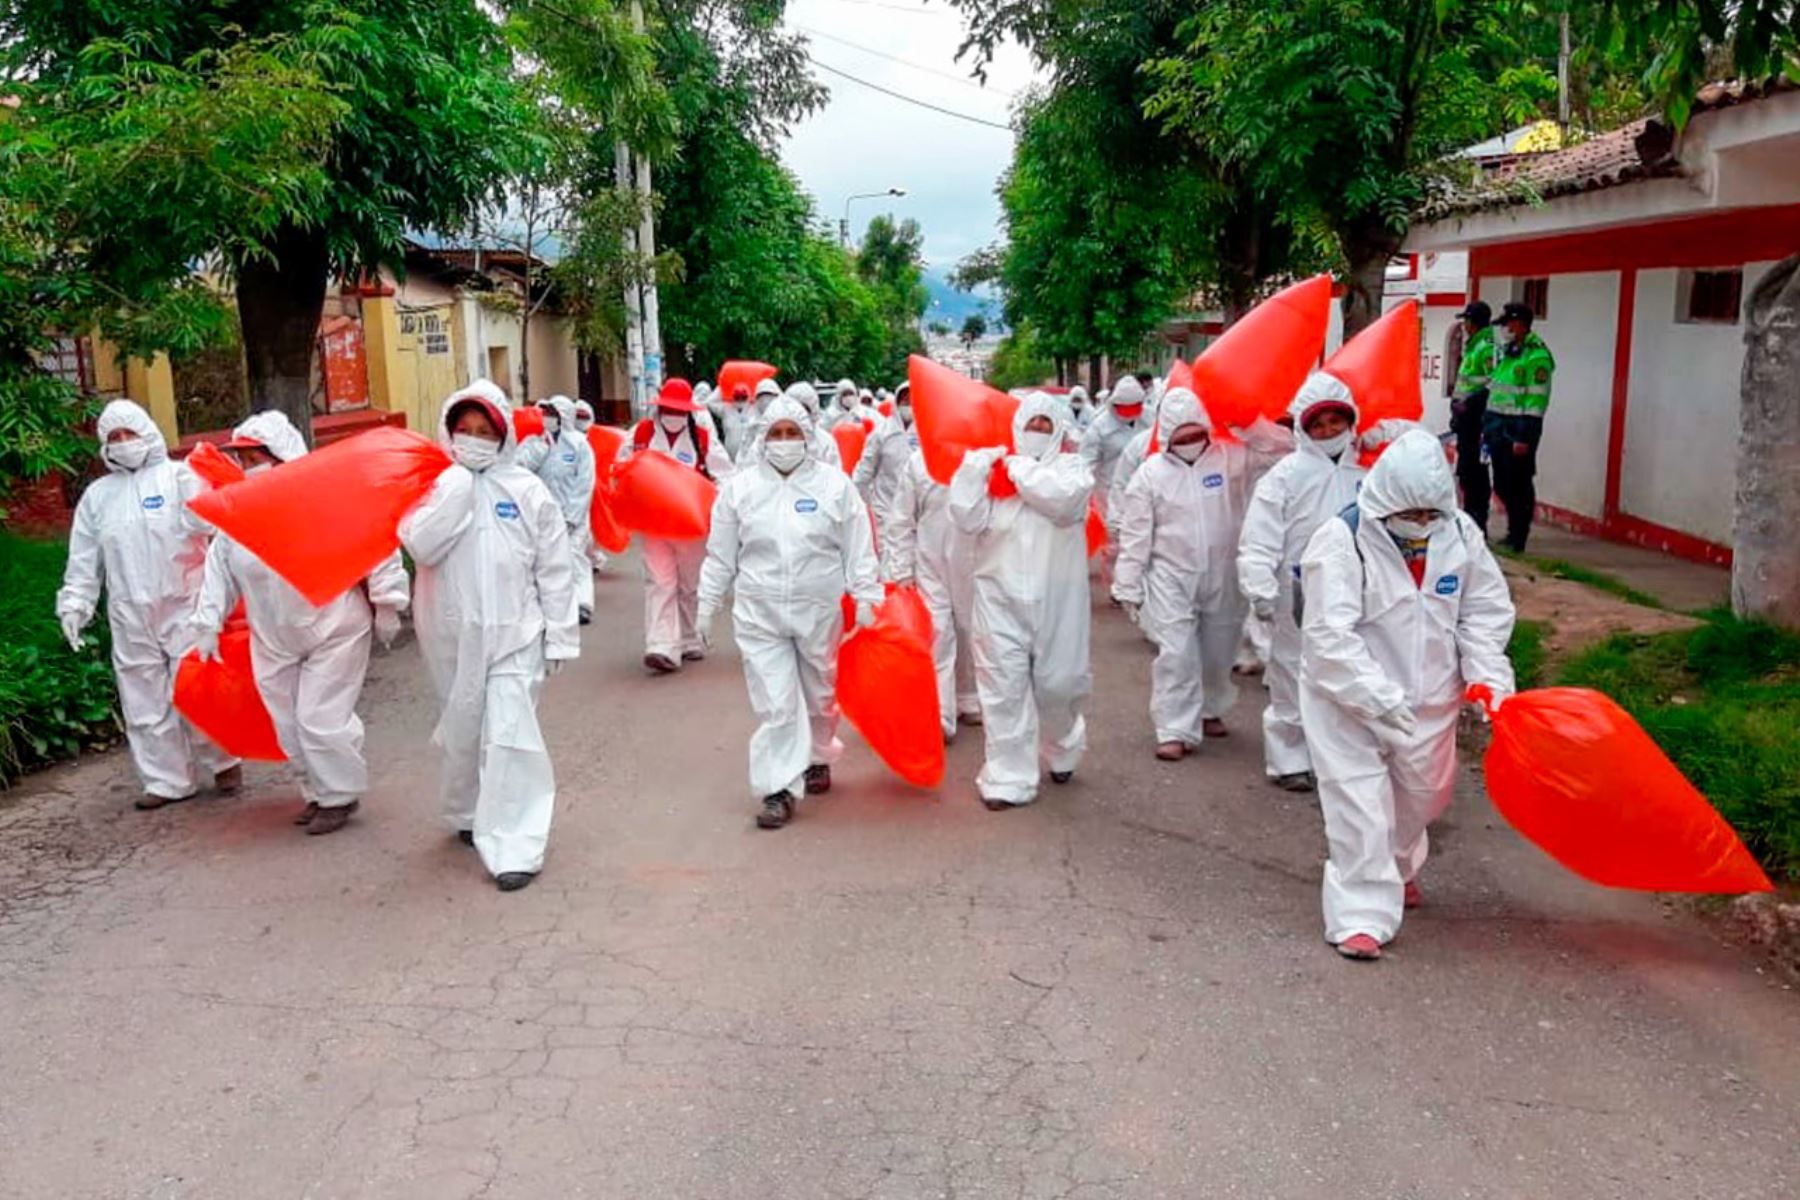 Trabajadores de limpieza pública usan indumentaria especial para evitar contagio. Foto: ANDINA/Percy Hurtado Santillán